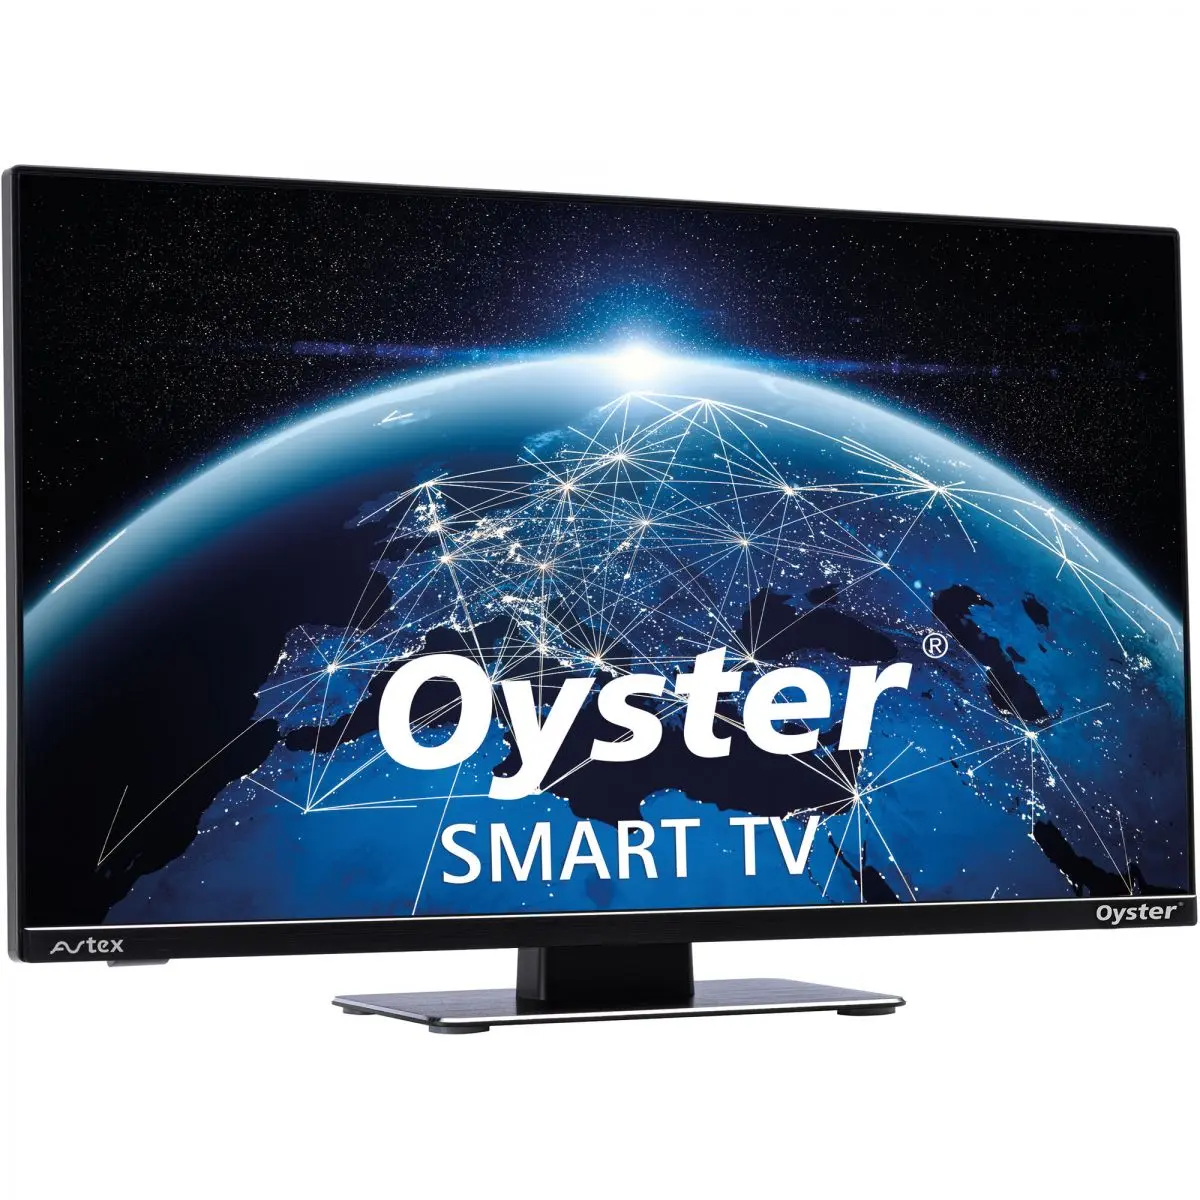 Oyster Smart TV 27, 12 V